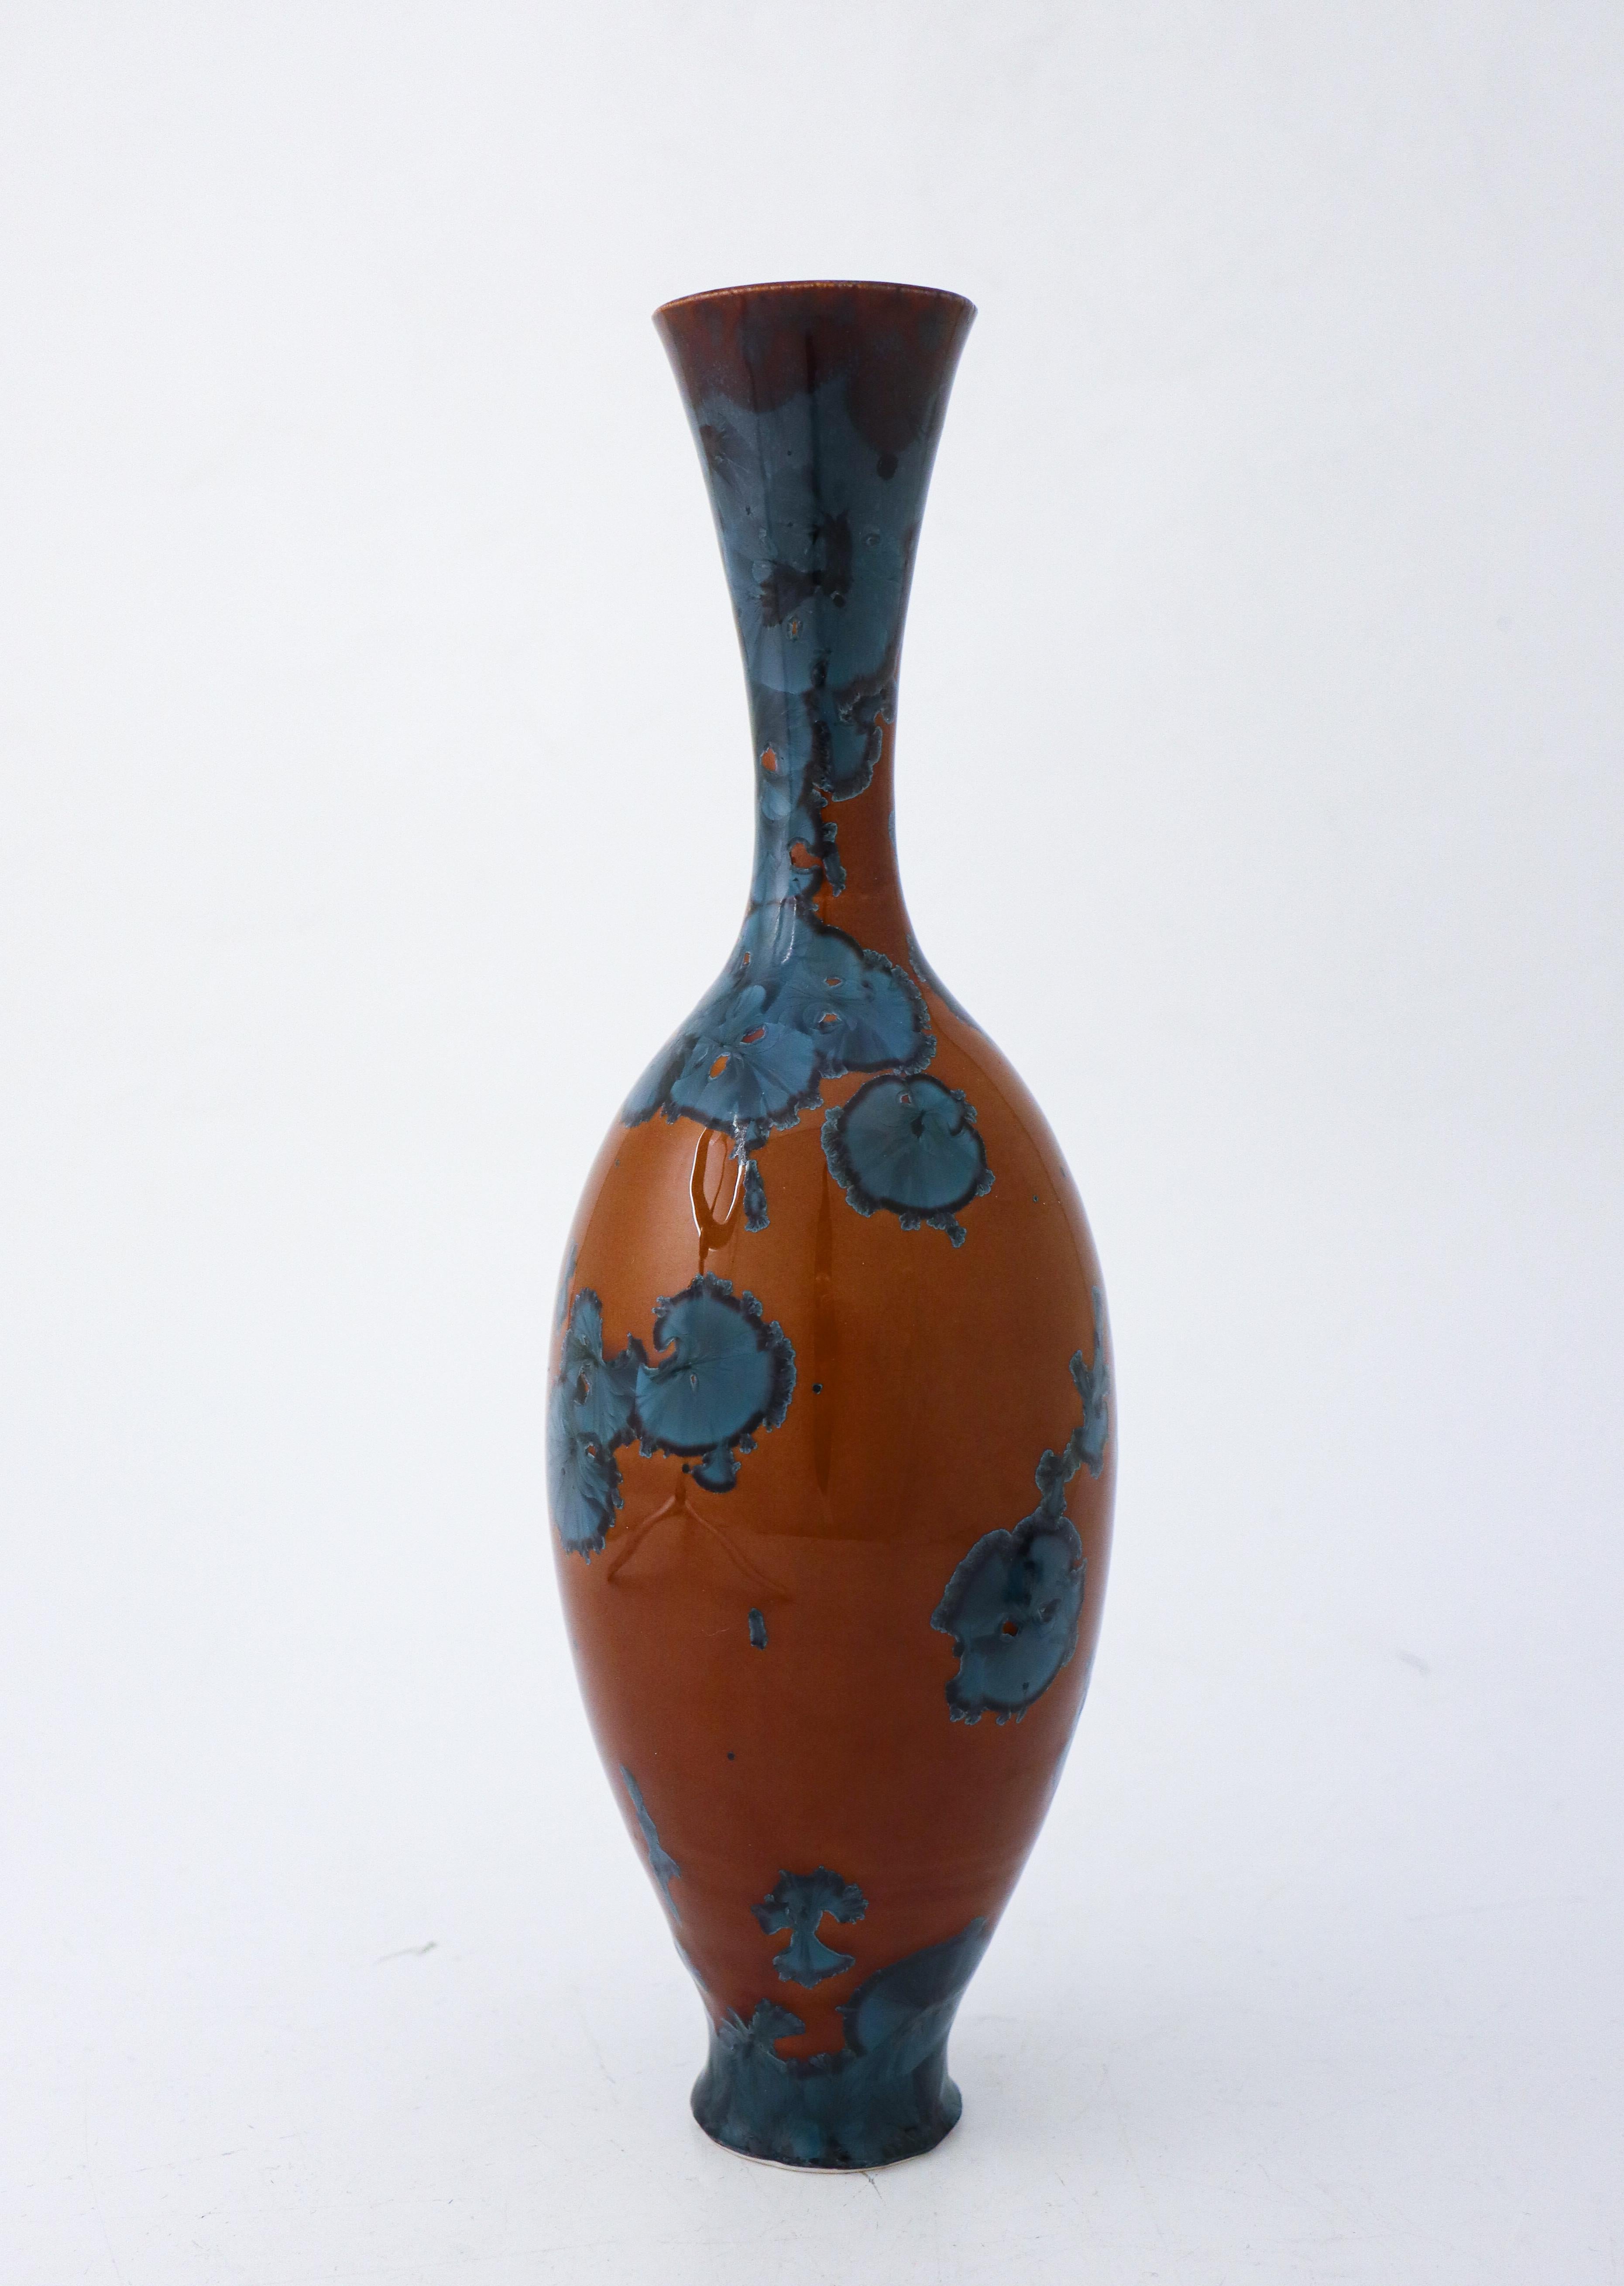 Scandinavian Modern Vase Blue & Brown Crystalline Glaze Isak Isaksson Contemporary Sweden Ceramic